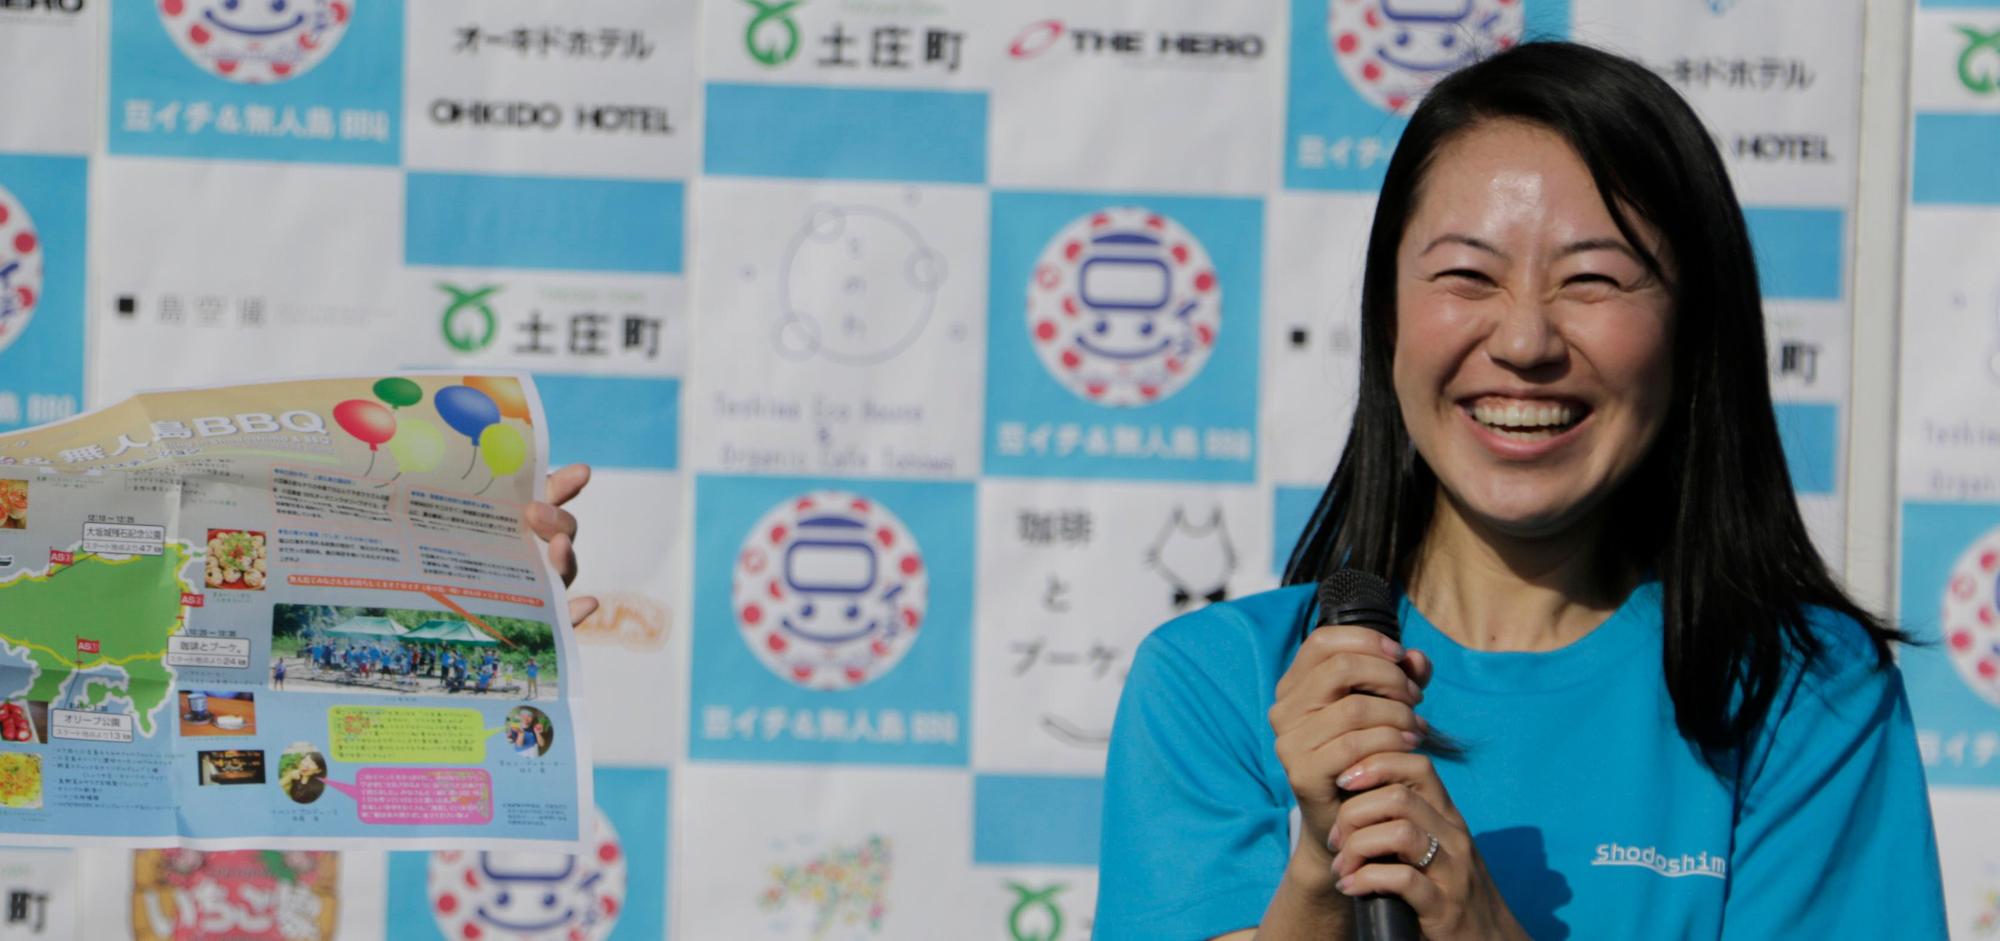 青いティシャツを着て、両手でマイクを持ち満面の笑みで写っている須藤 渚さんの写真